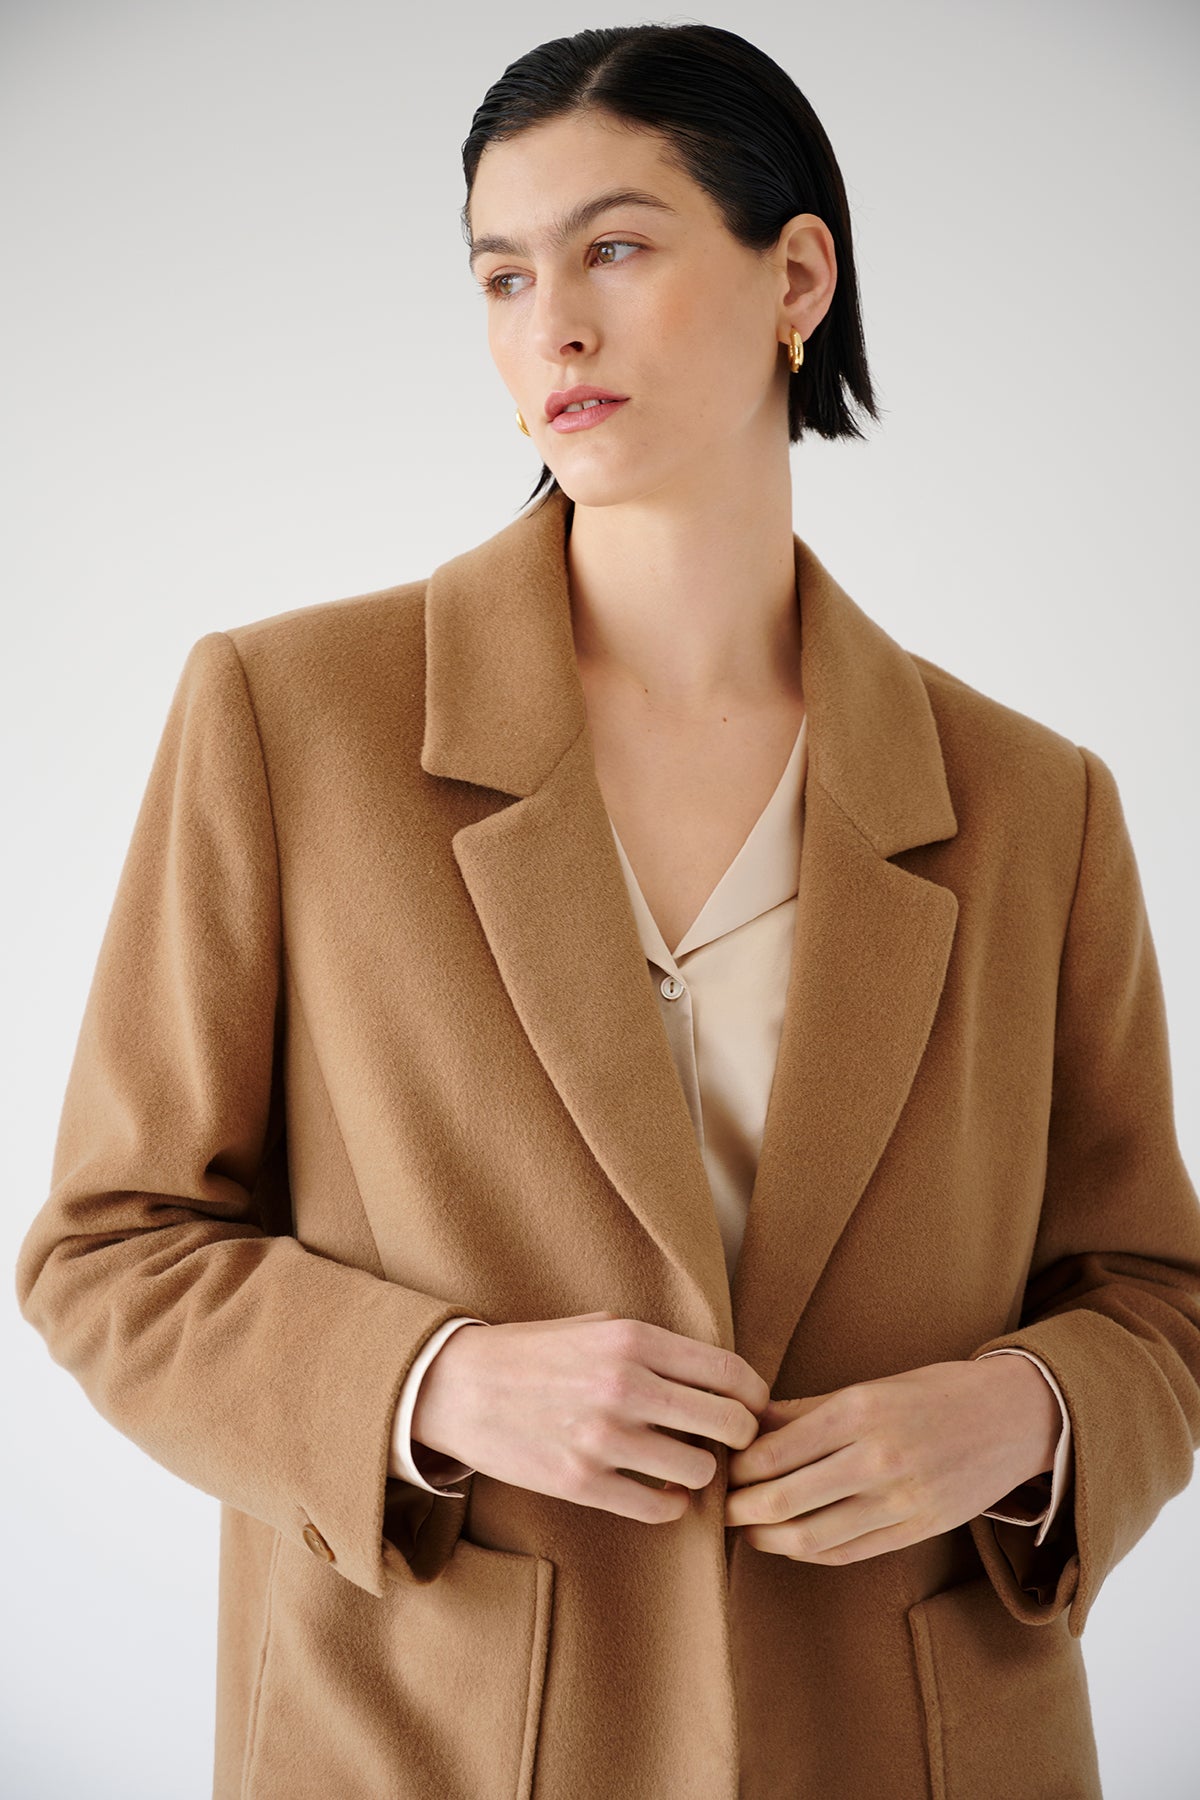 The model is wearing an oversized Velvet by Jenny Graham camel coat.-35547423637697